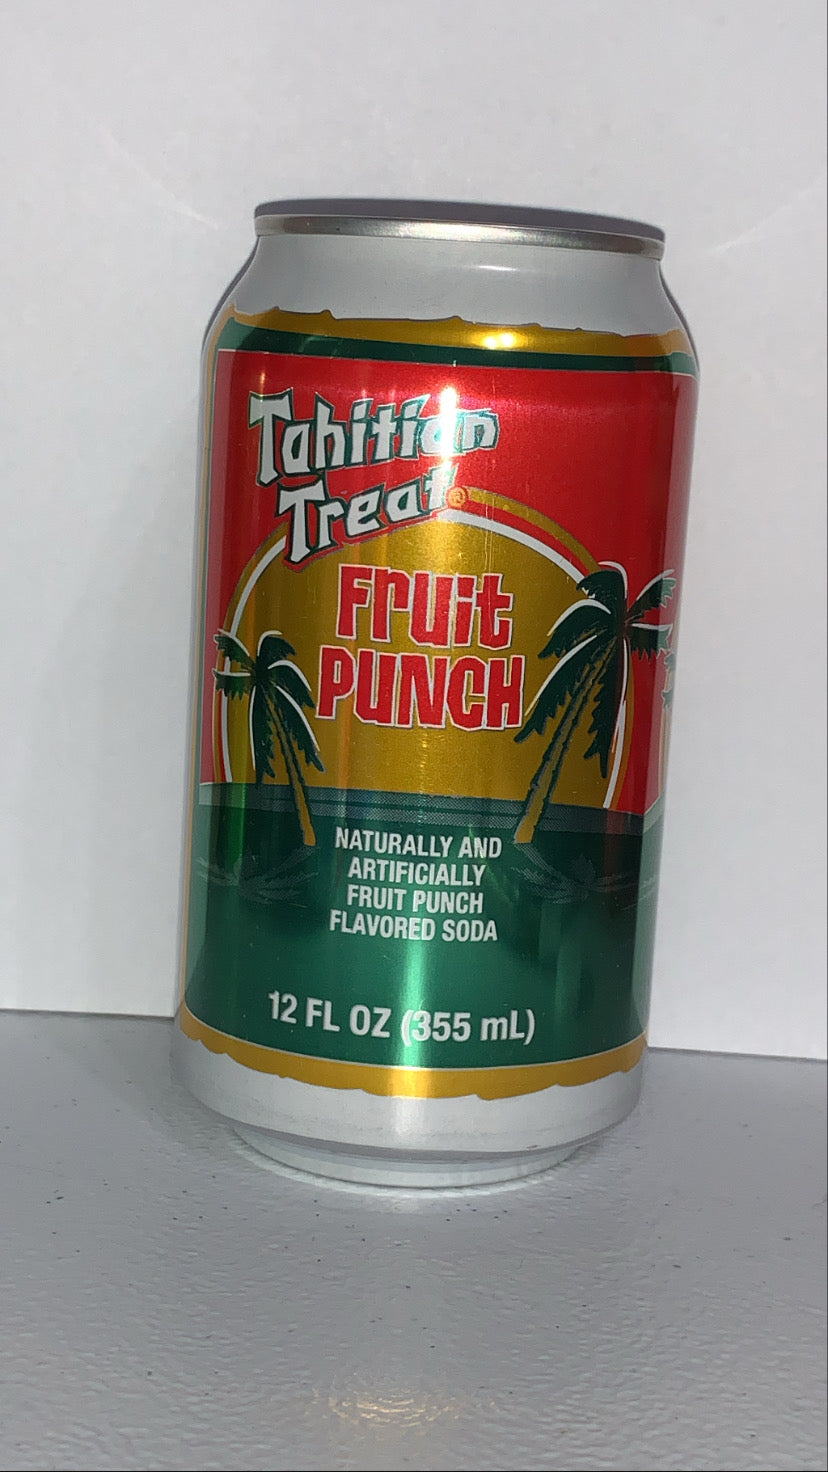 Tahitian treat fruit punch (Tahiti)